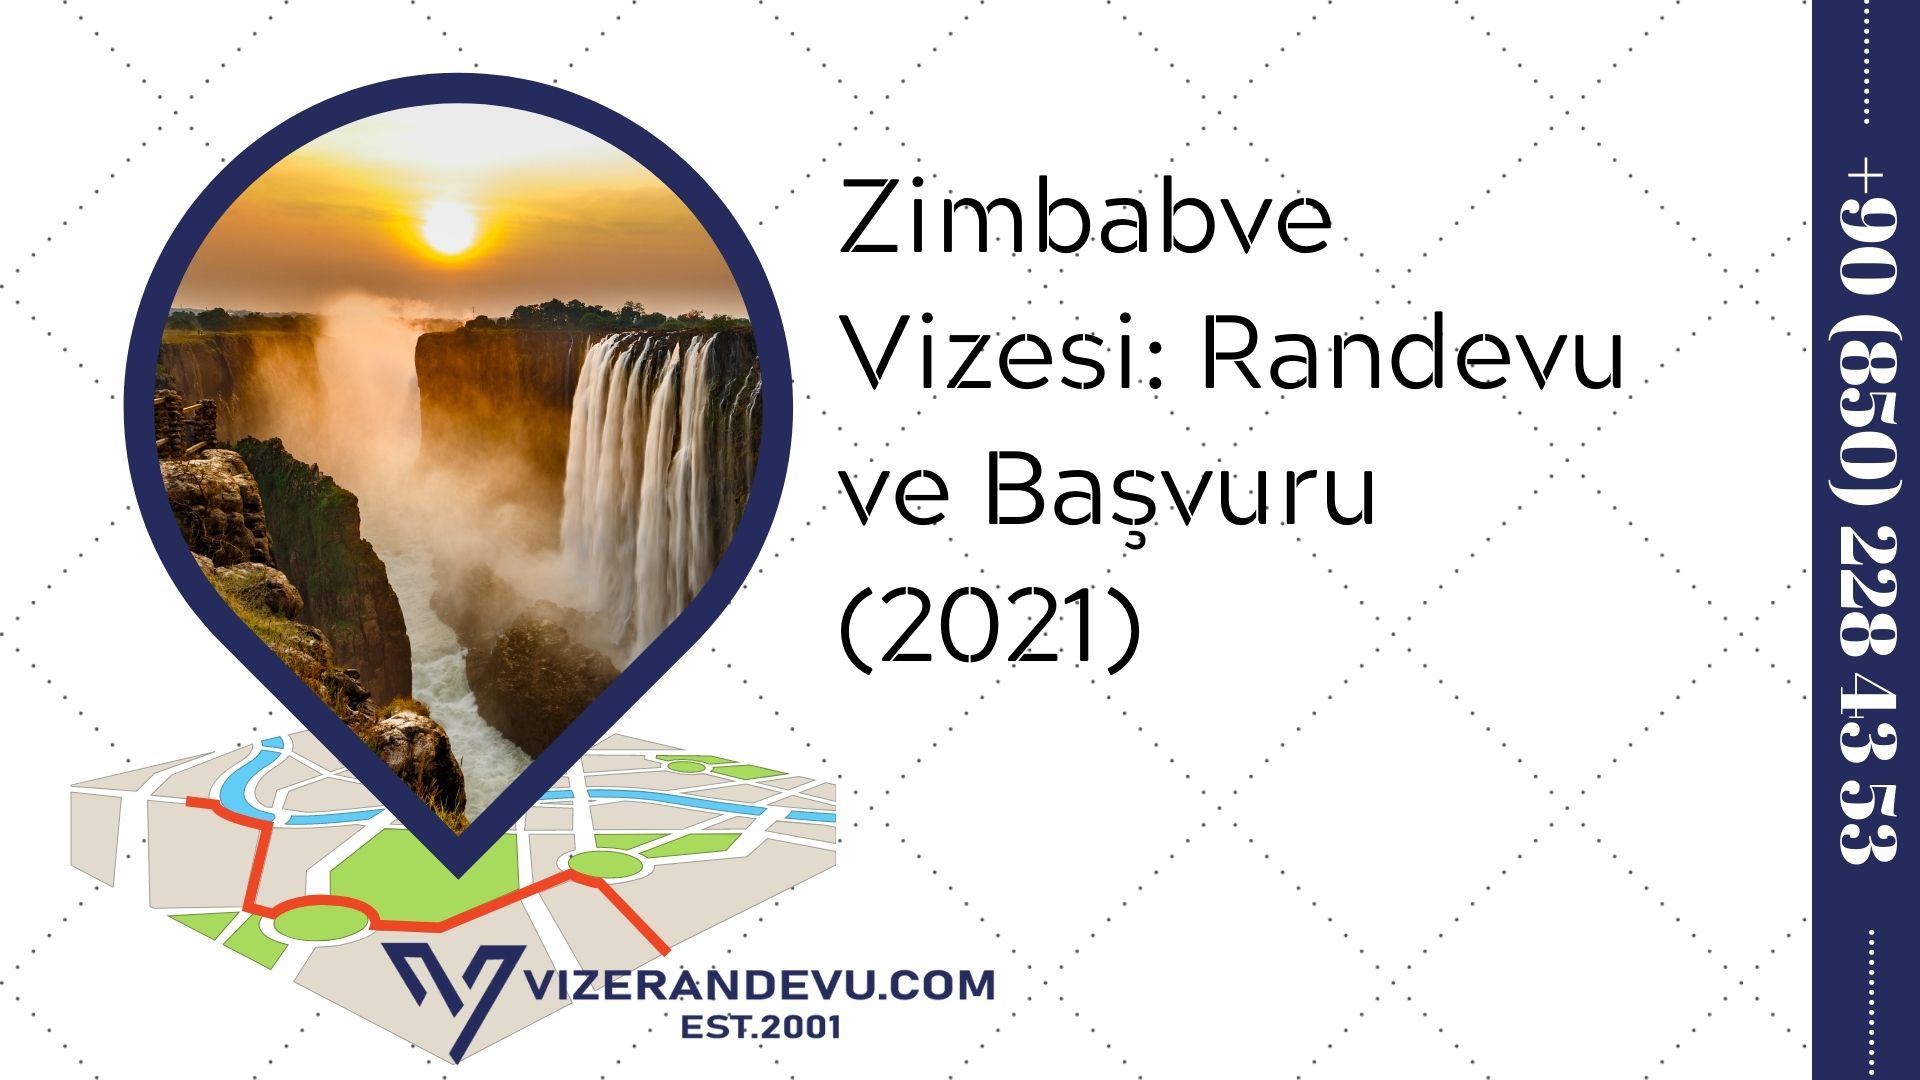 Zimbabve Vizesi: Randevu ve Başvuru (2021)